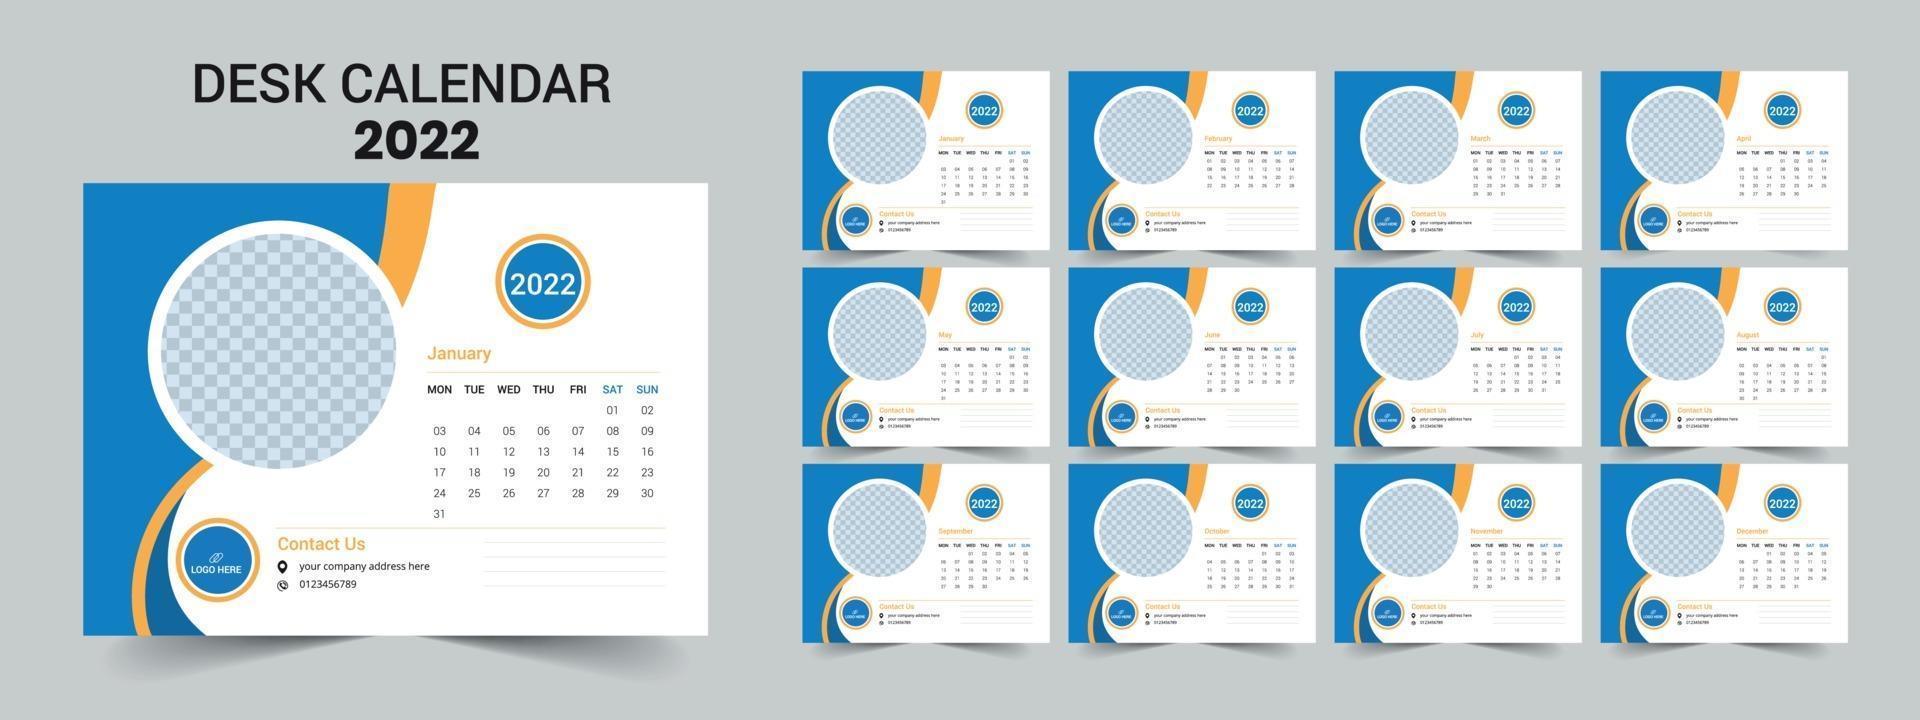 Calendario de escritorio 2022, diseño moderno y limpio. vector